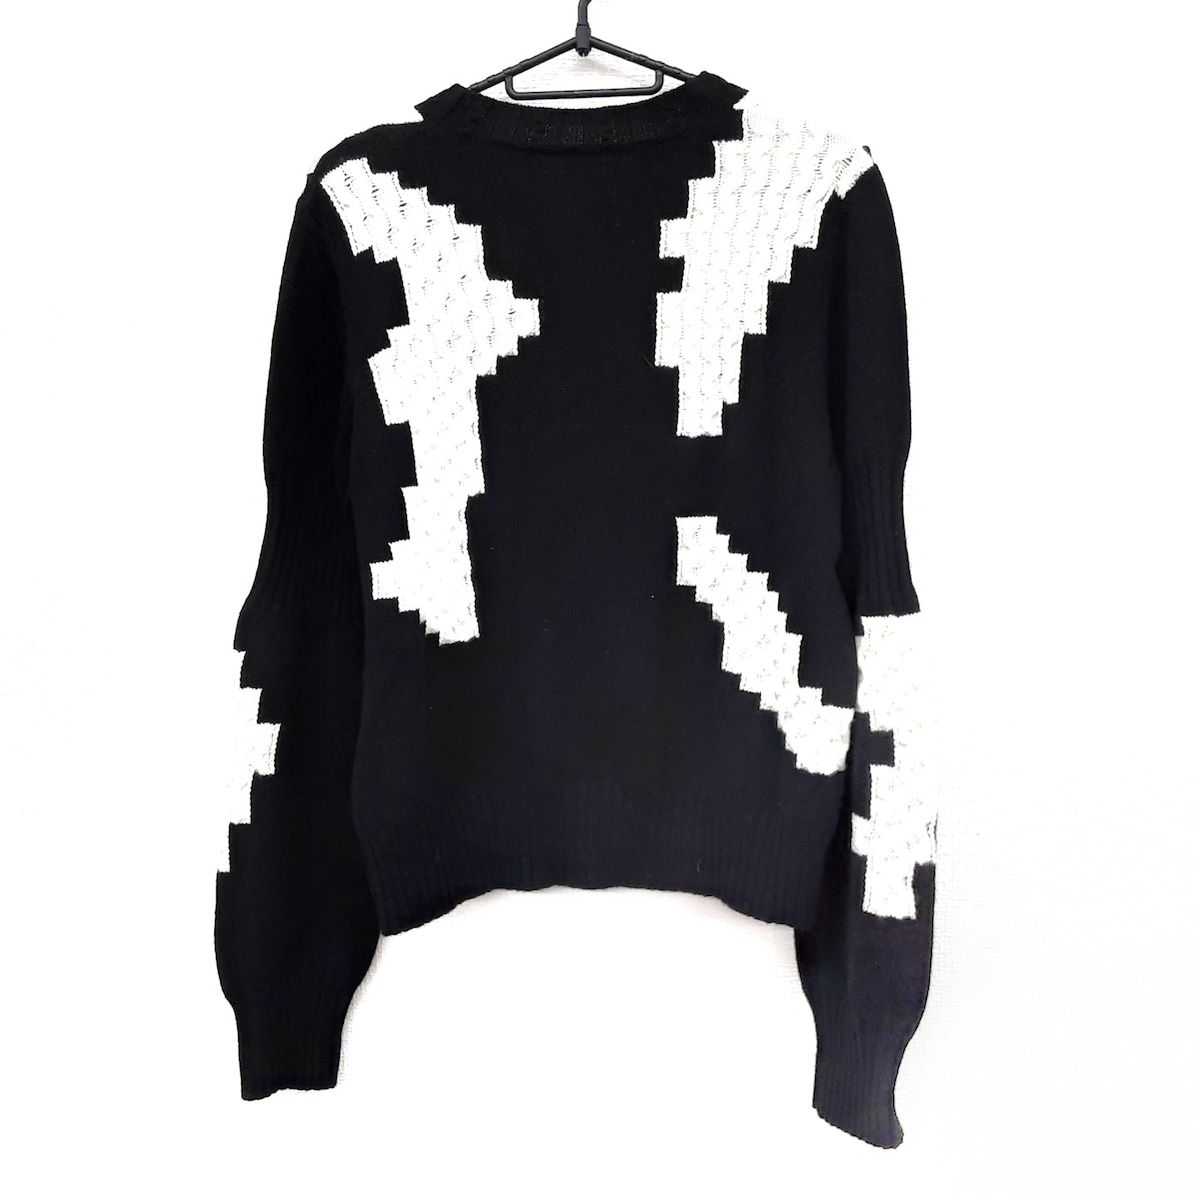 CHANEL(シャネル) 長袖セーター サイズ38 M レディース美品 - P54810 黒×アイボリー クルーネック